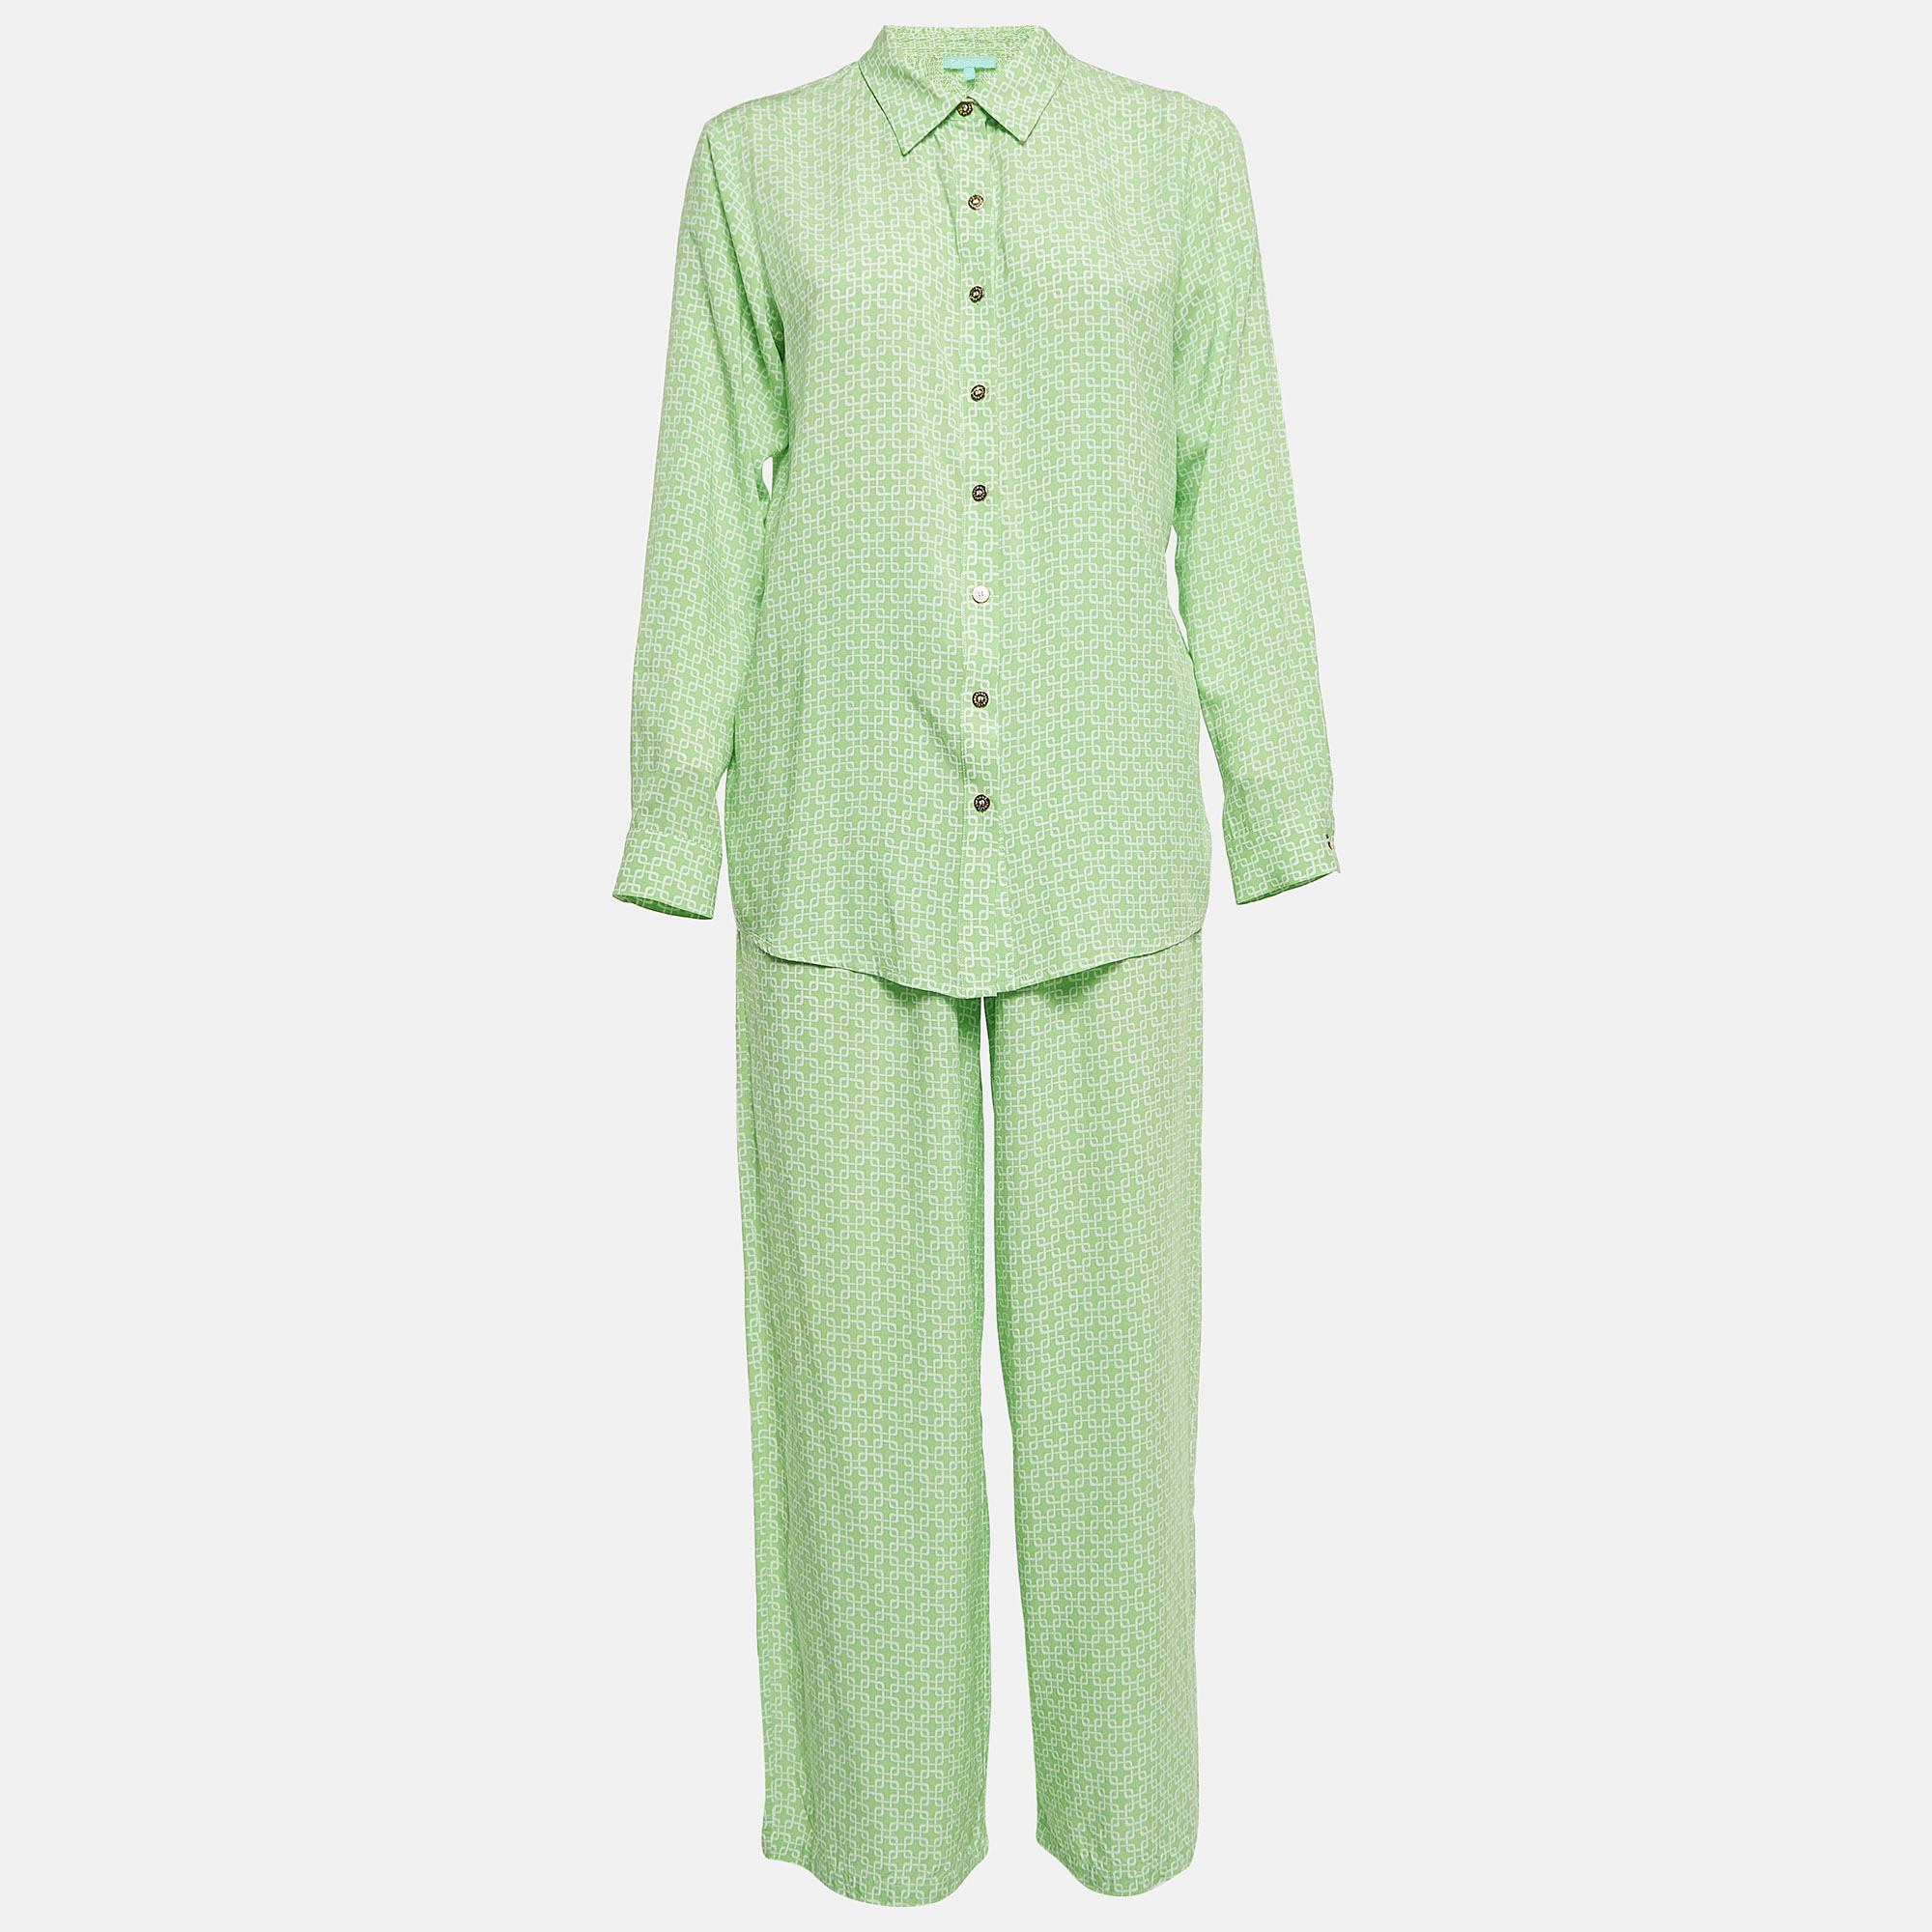 Melissa odabash green printed viscose top & pants set xs